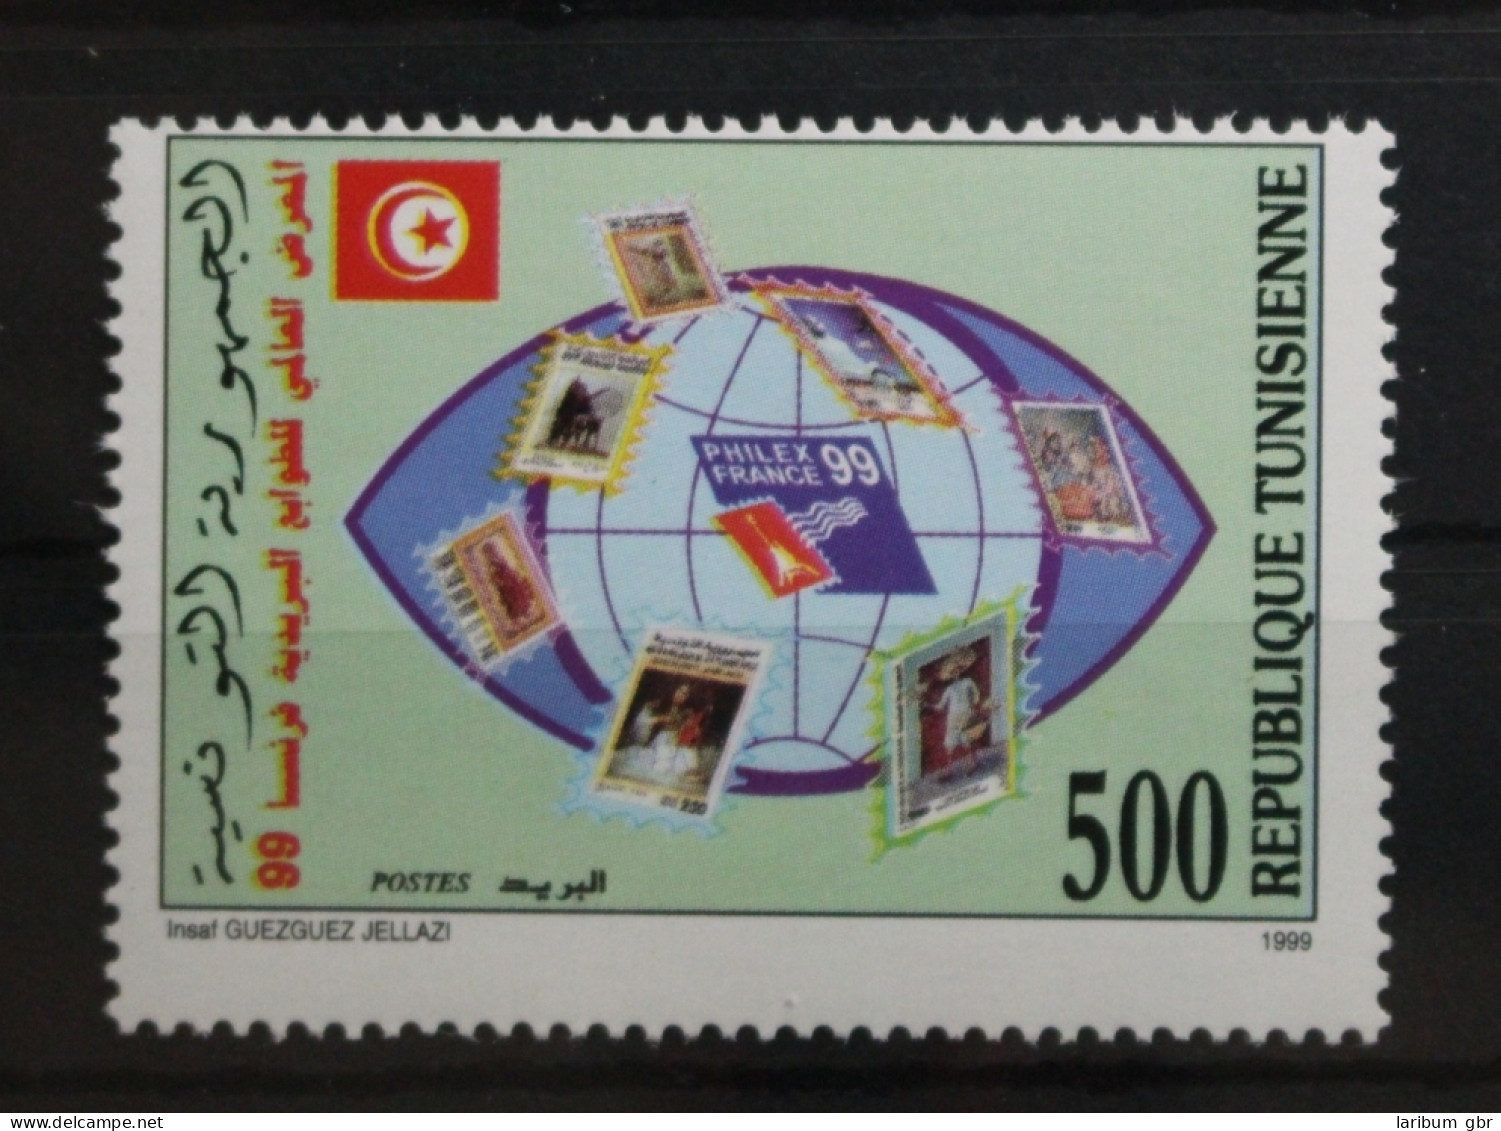 Tunesien 1433 Postfrisch #TC168 - Tunesien (1956-...)